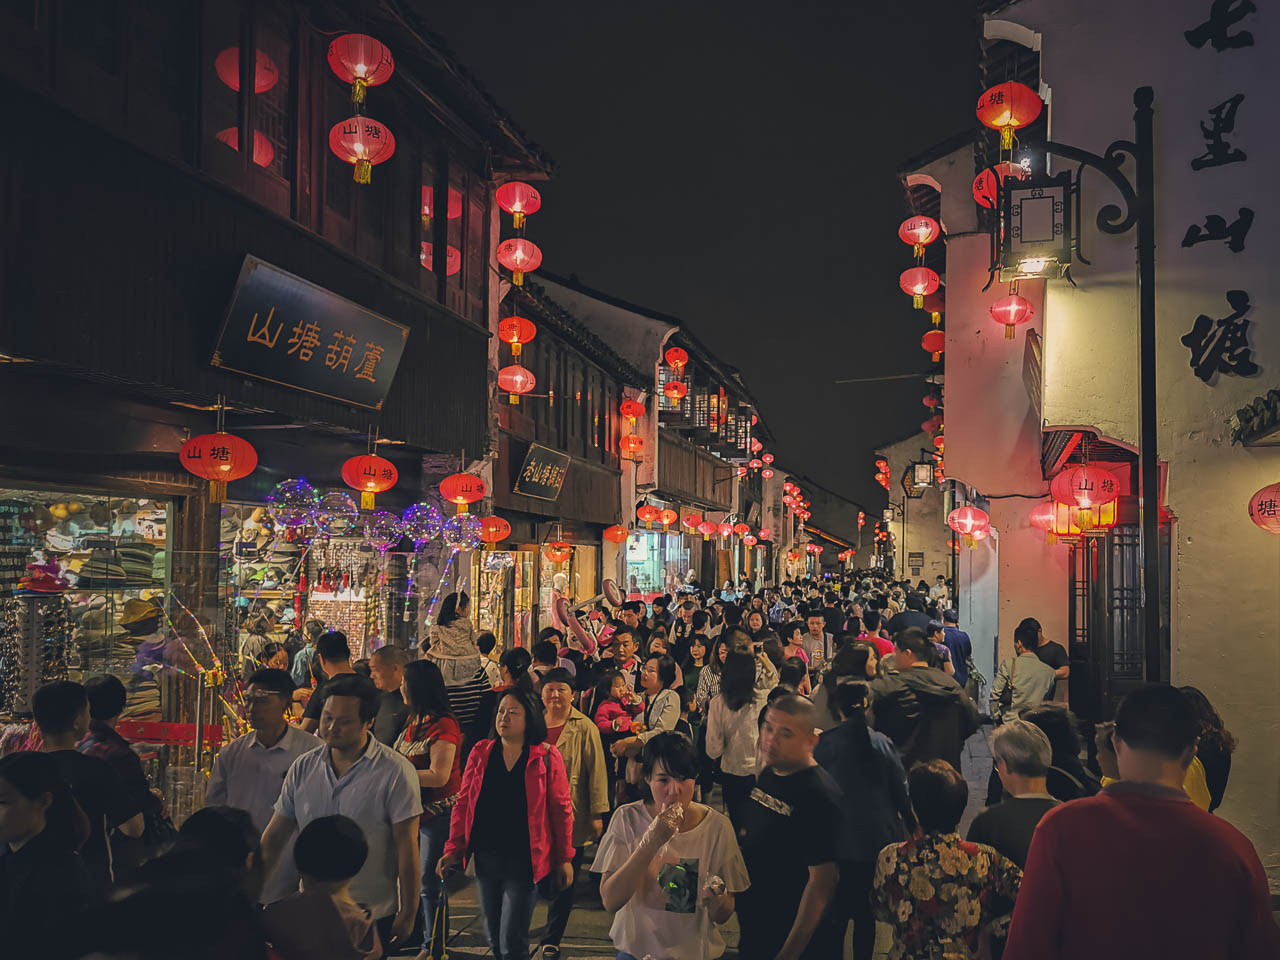 Shantang Street at night Suzhou China